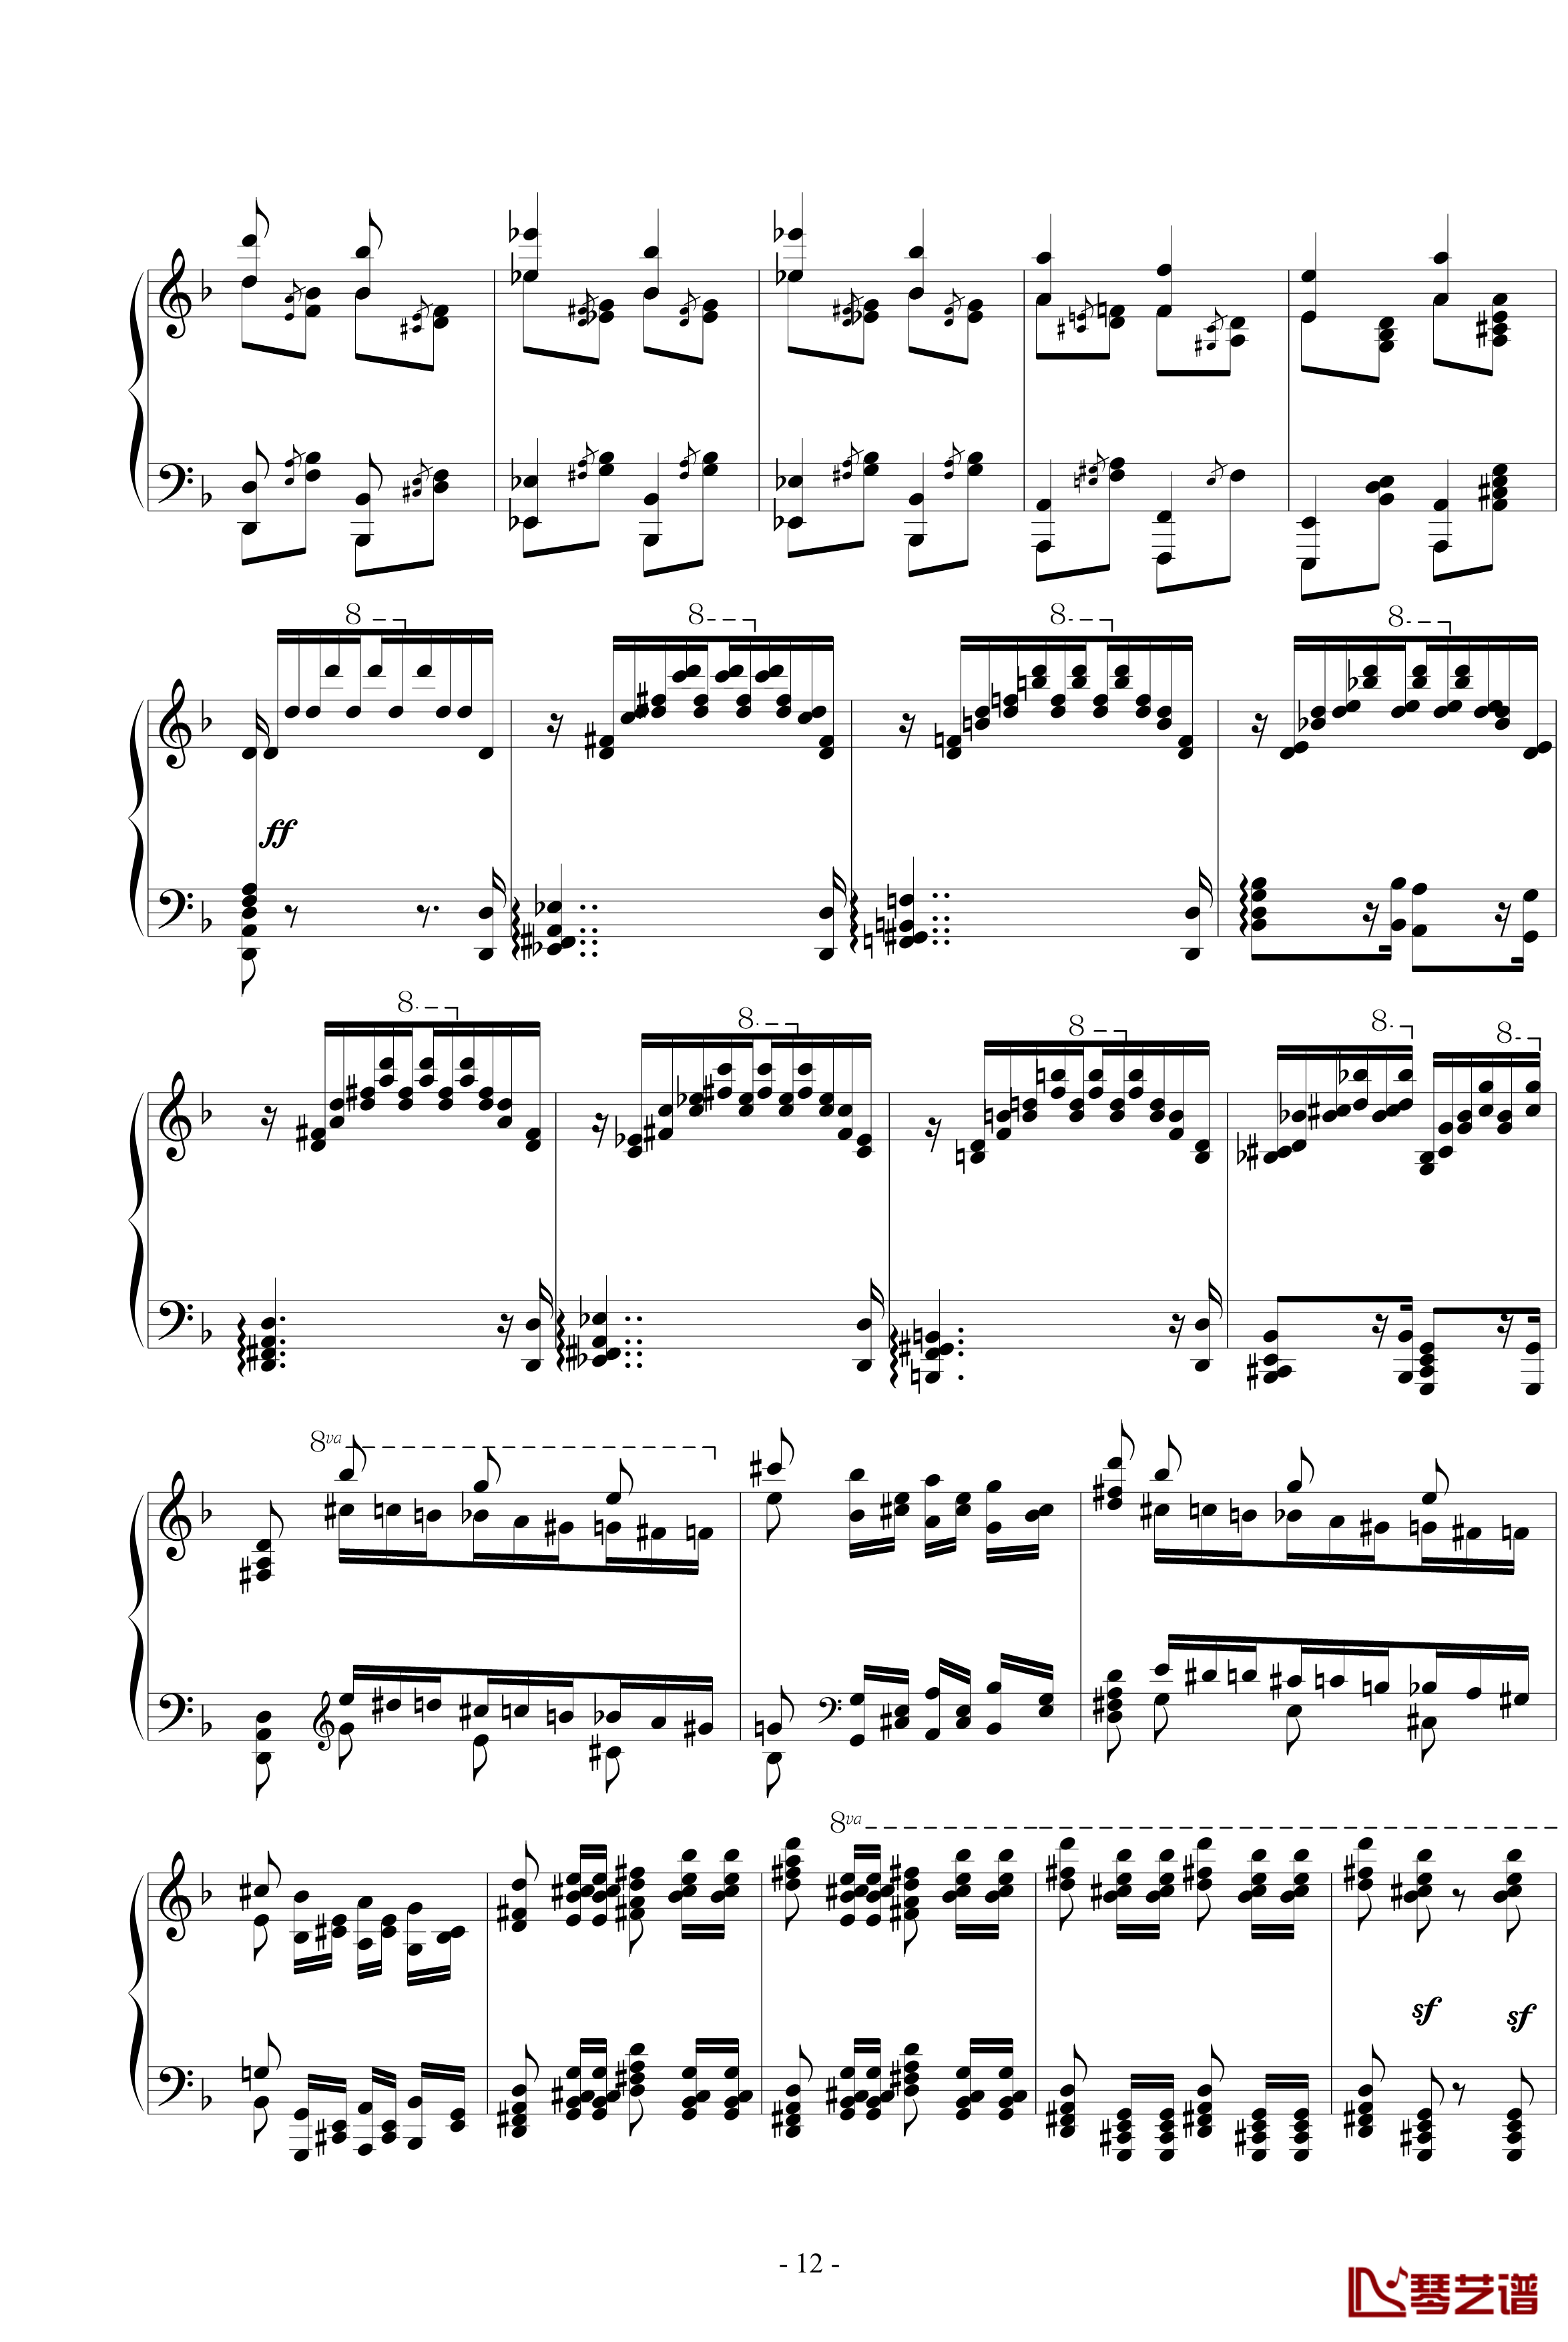 练习曲4马捷帕钢琴谱-李斯特